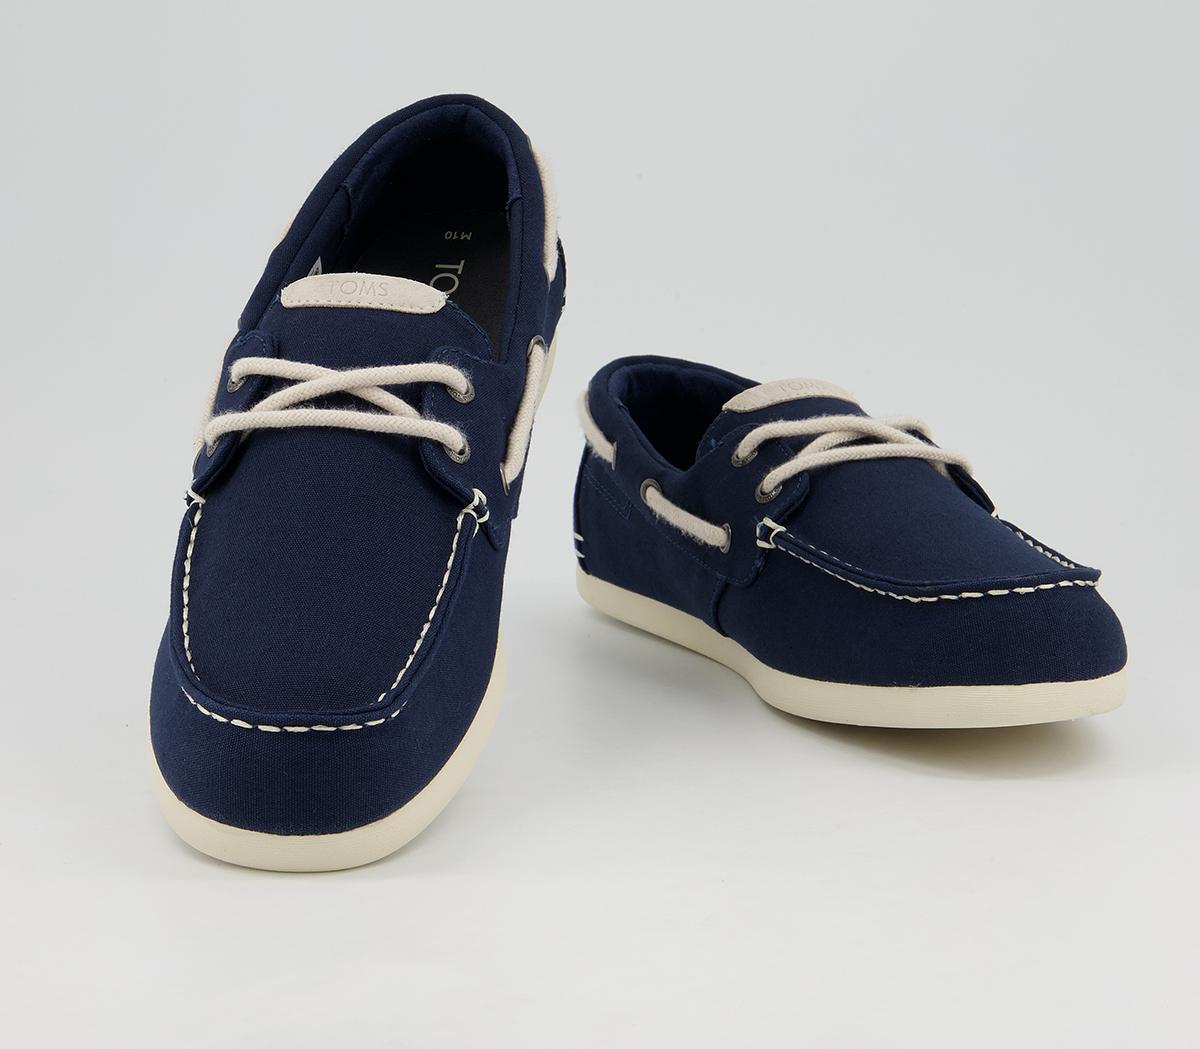 TOMS Claremont Boat Shoes Navy - Men’s Vegan Shoes